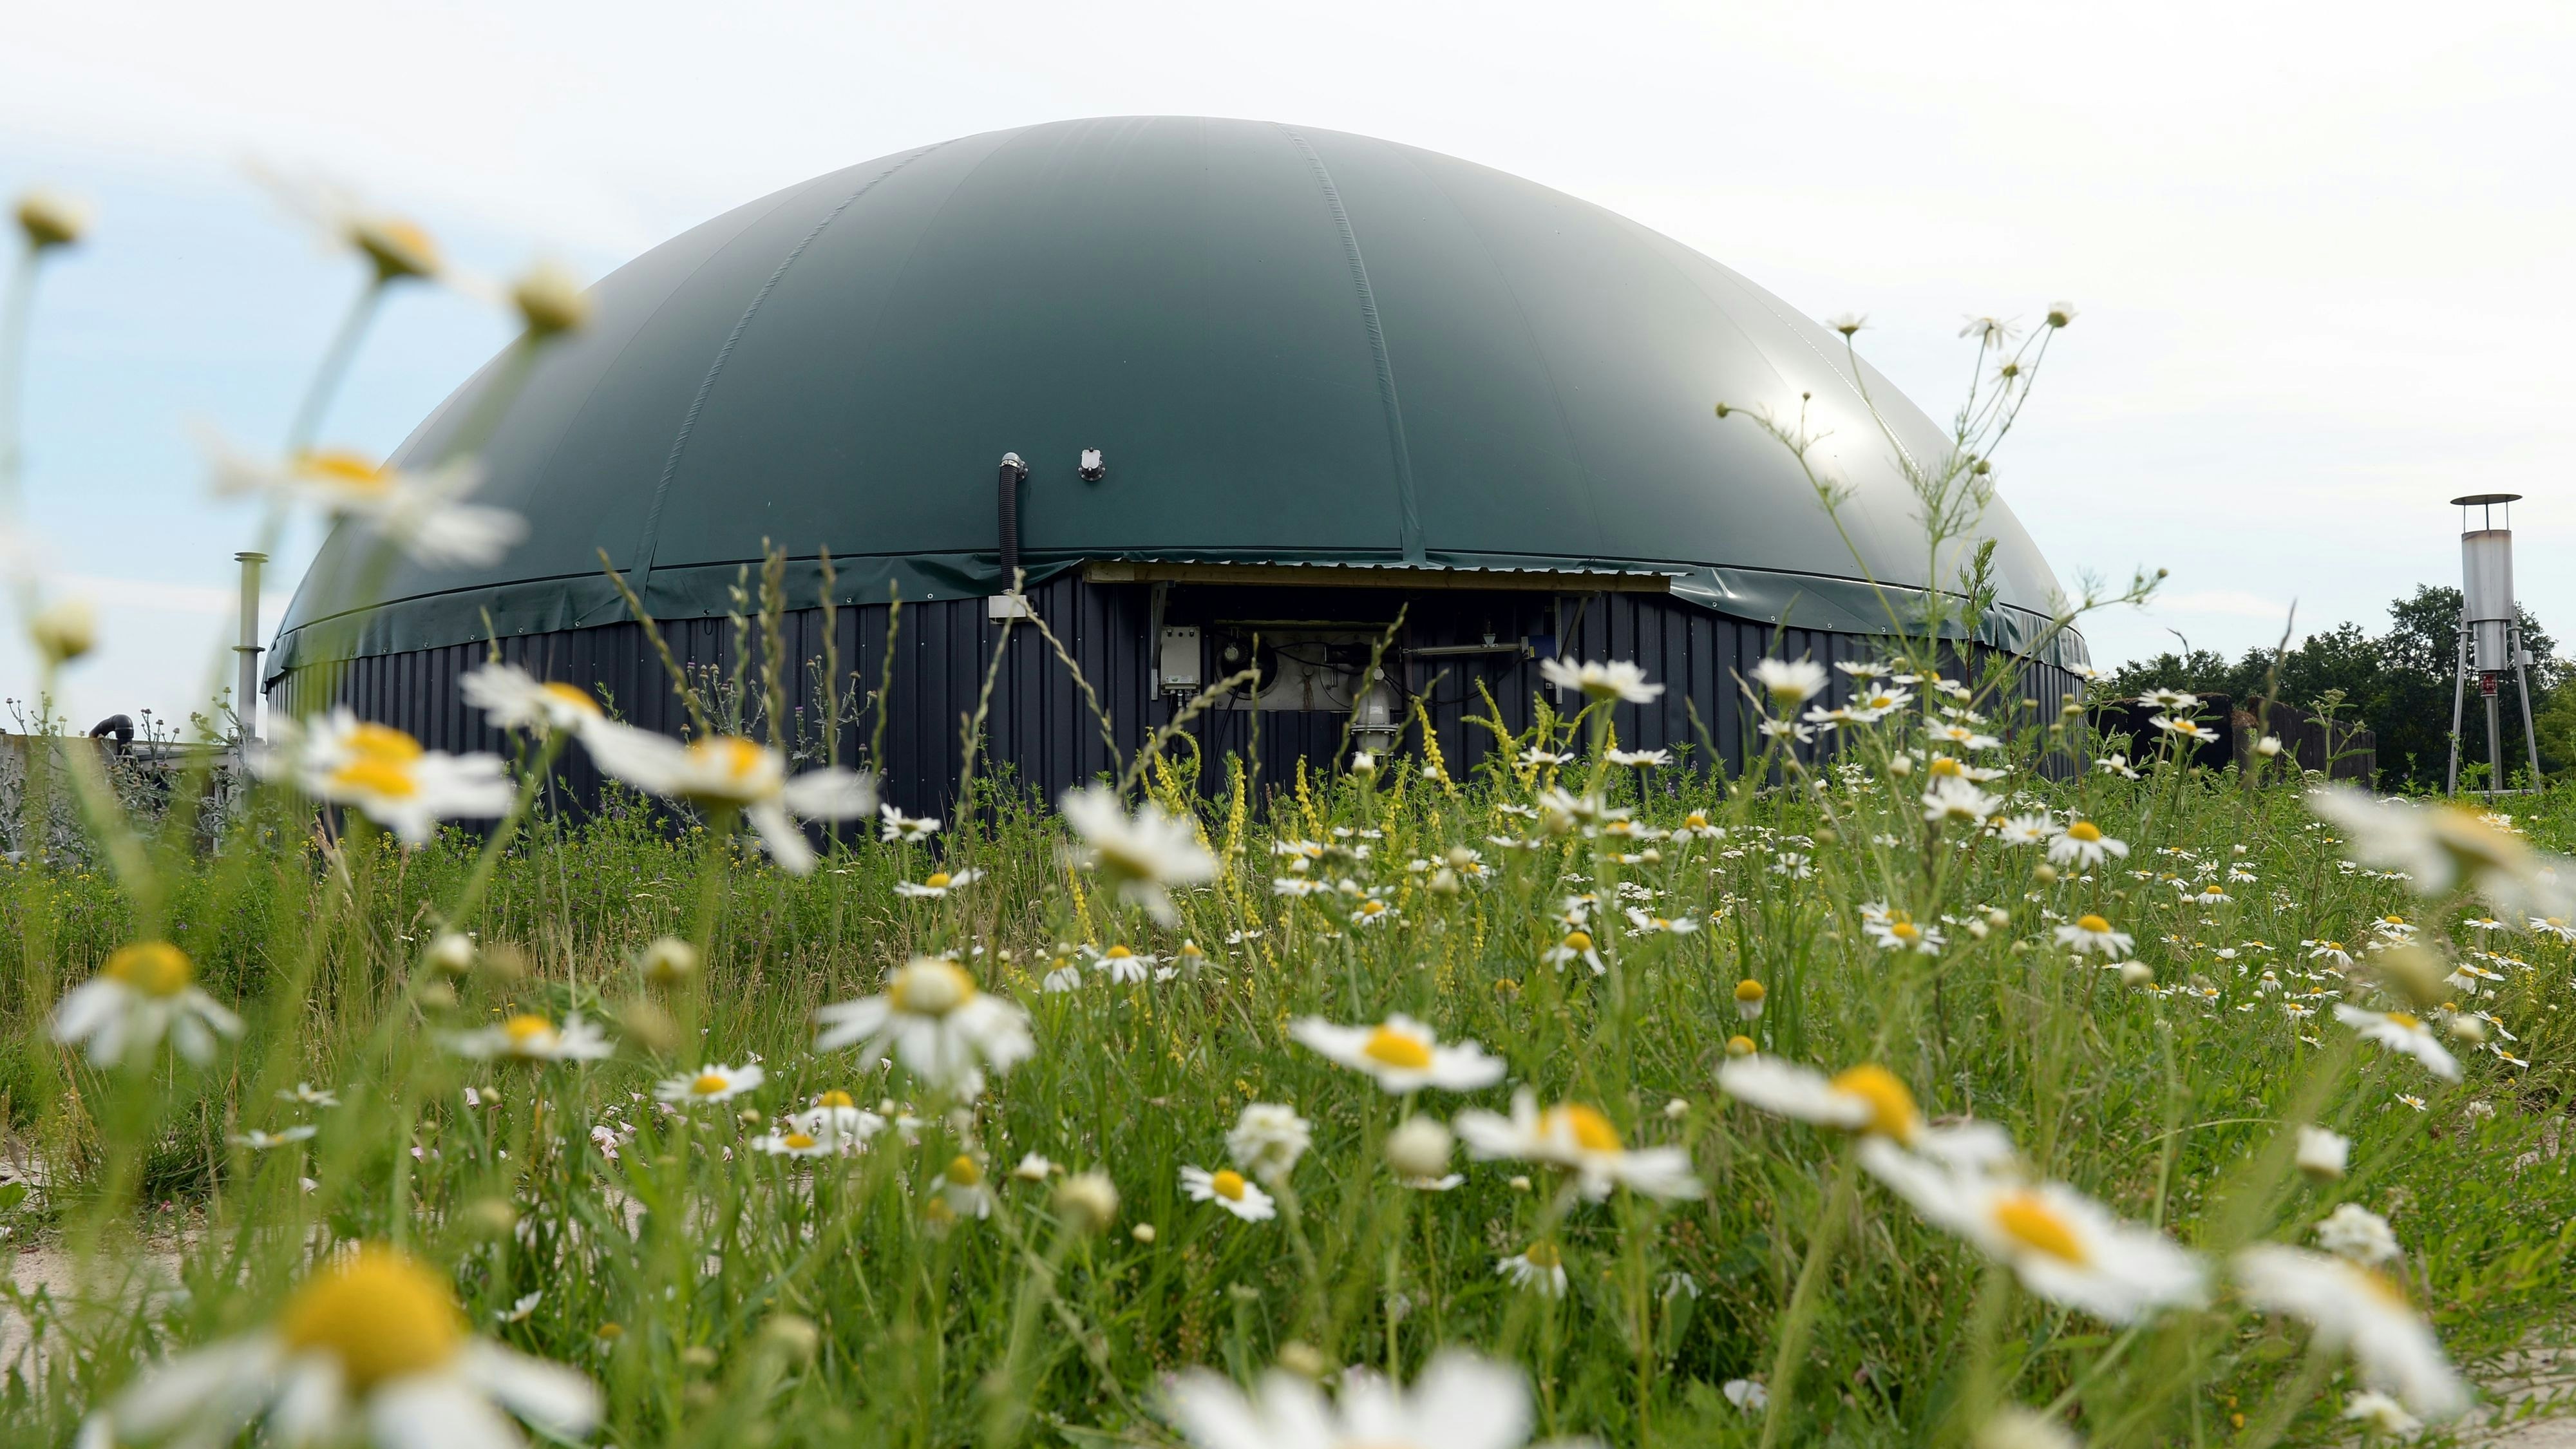 Biogasanlagen spielen bei der Energiewende eine Rolle. Symbolfoto: dpa/Gambarini